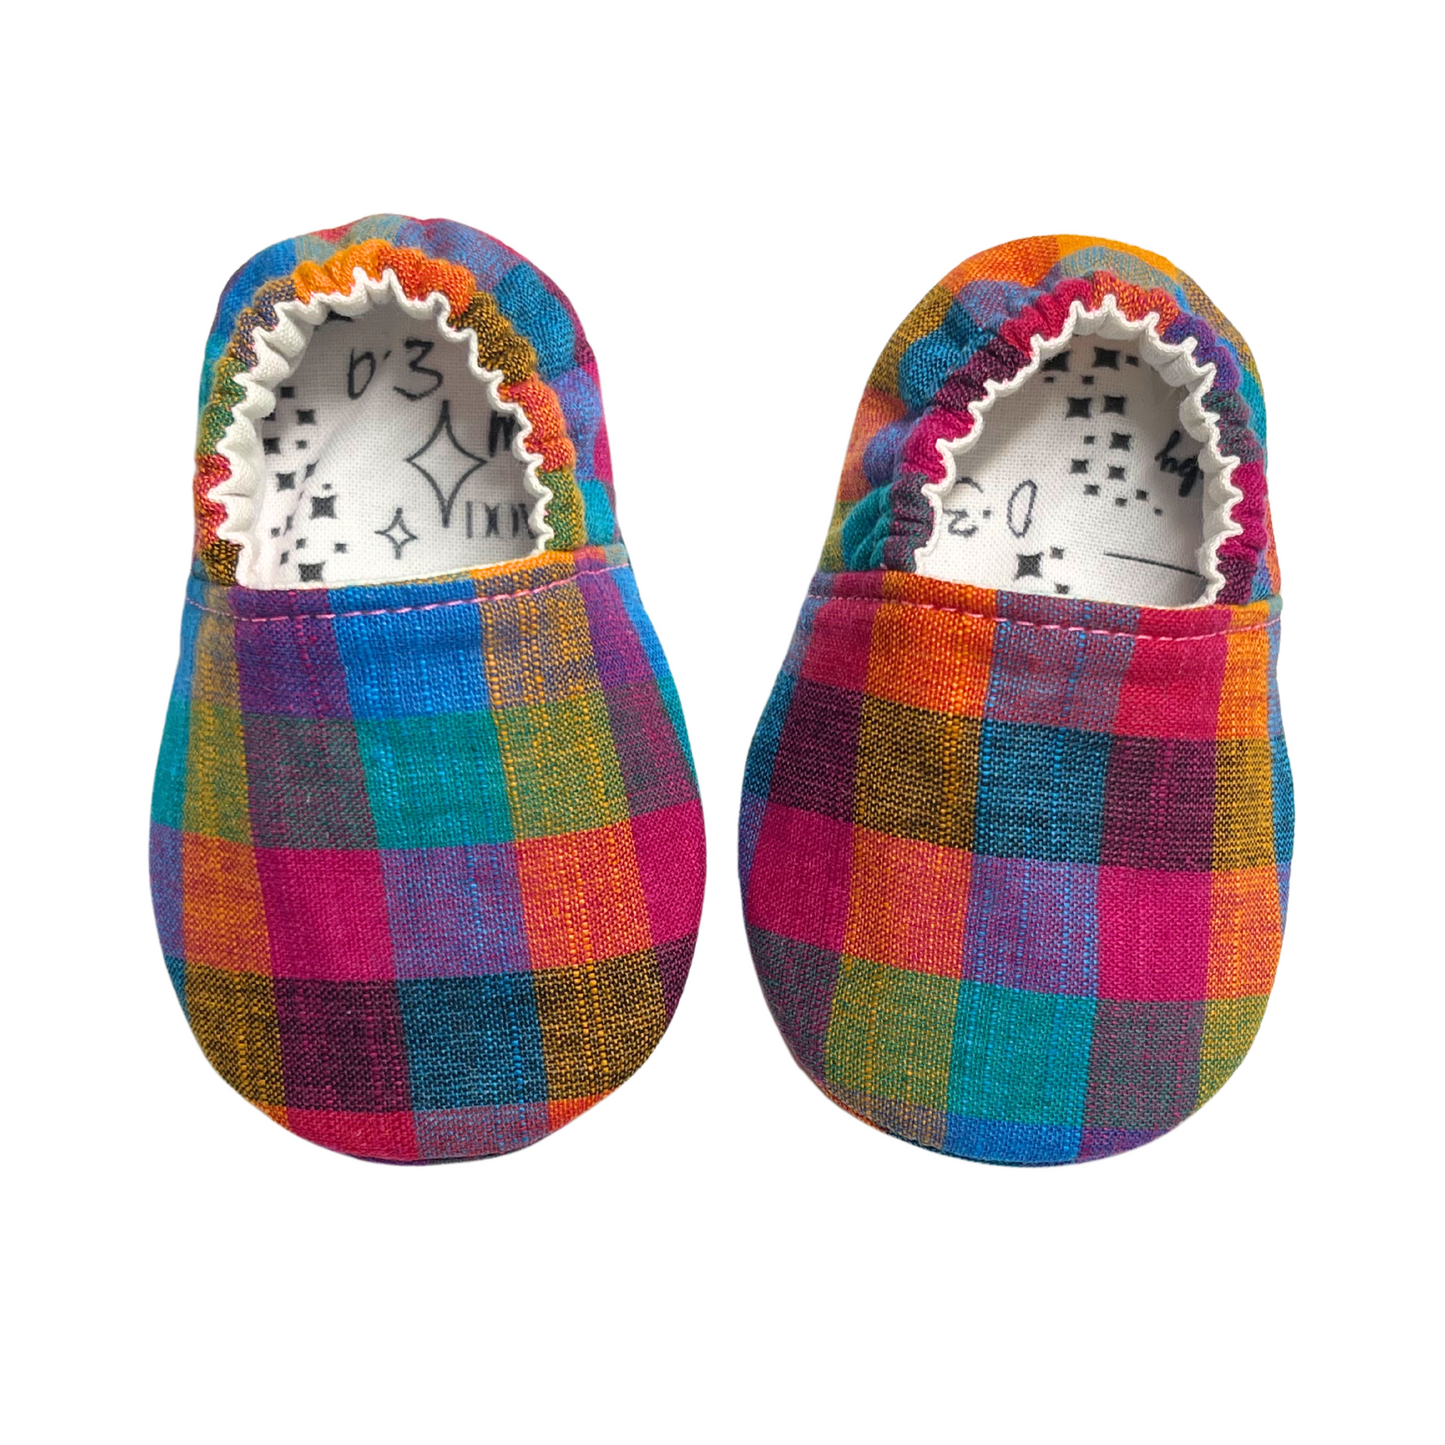 Vibrant Tiny Madras Plaid Baby Shoes – Handmade, Ready to Ship